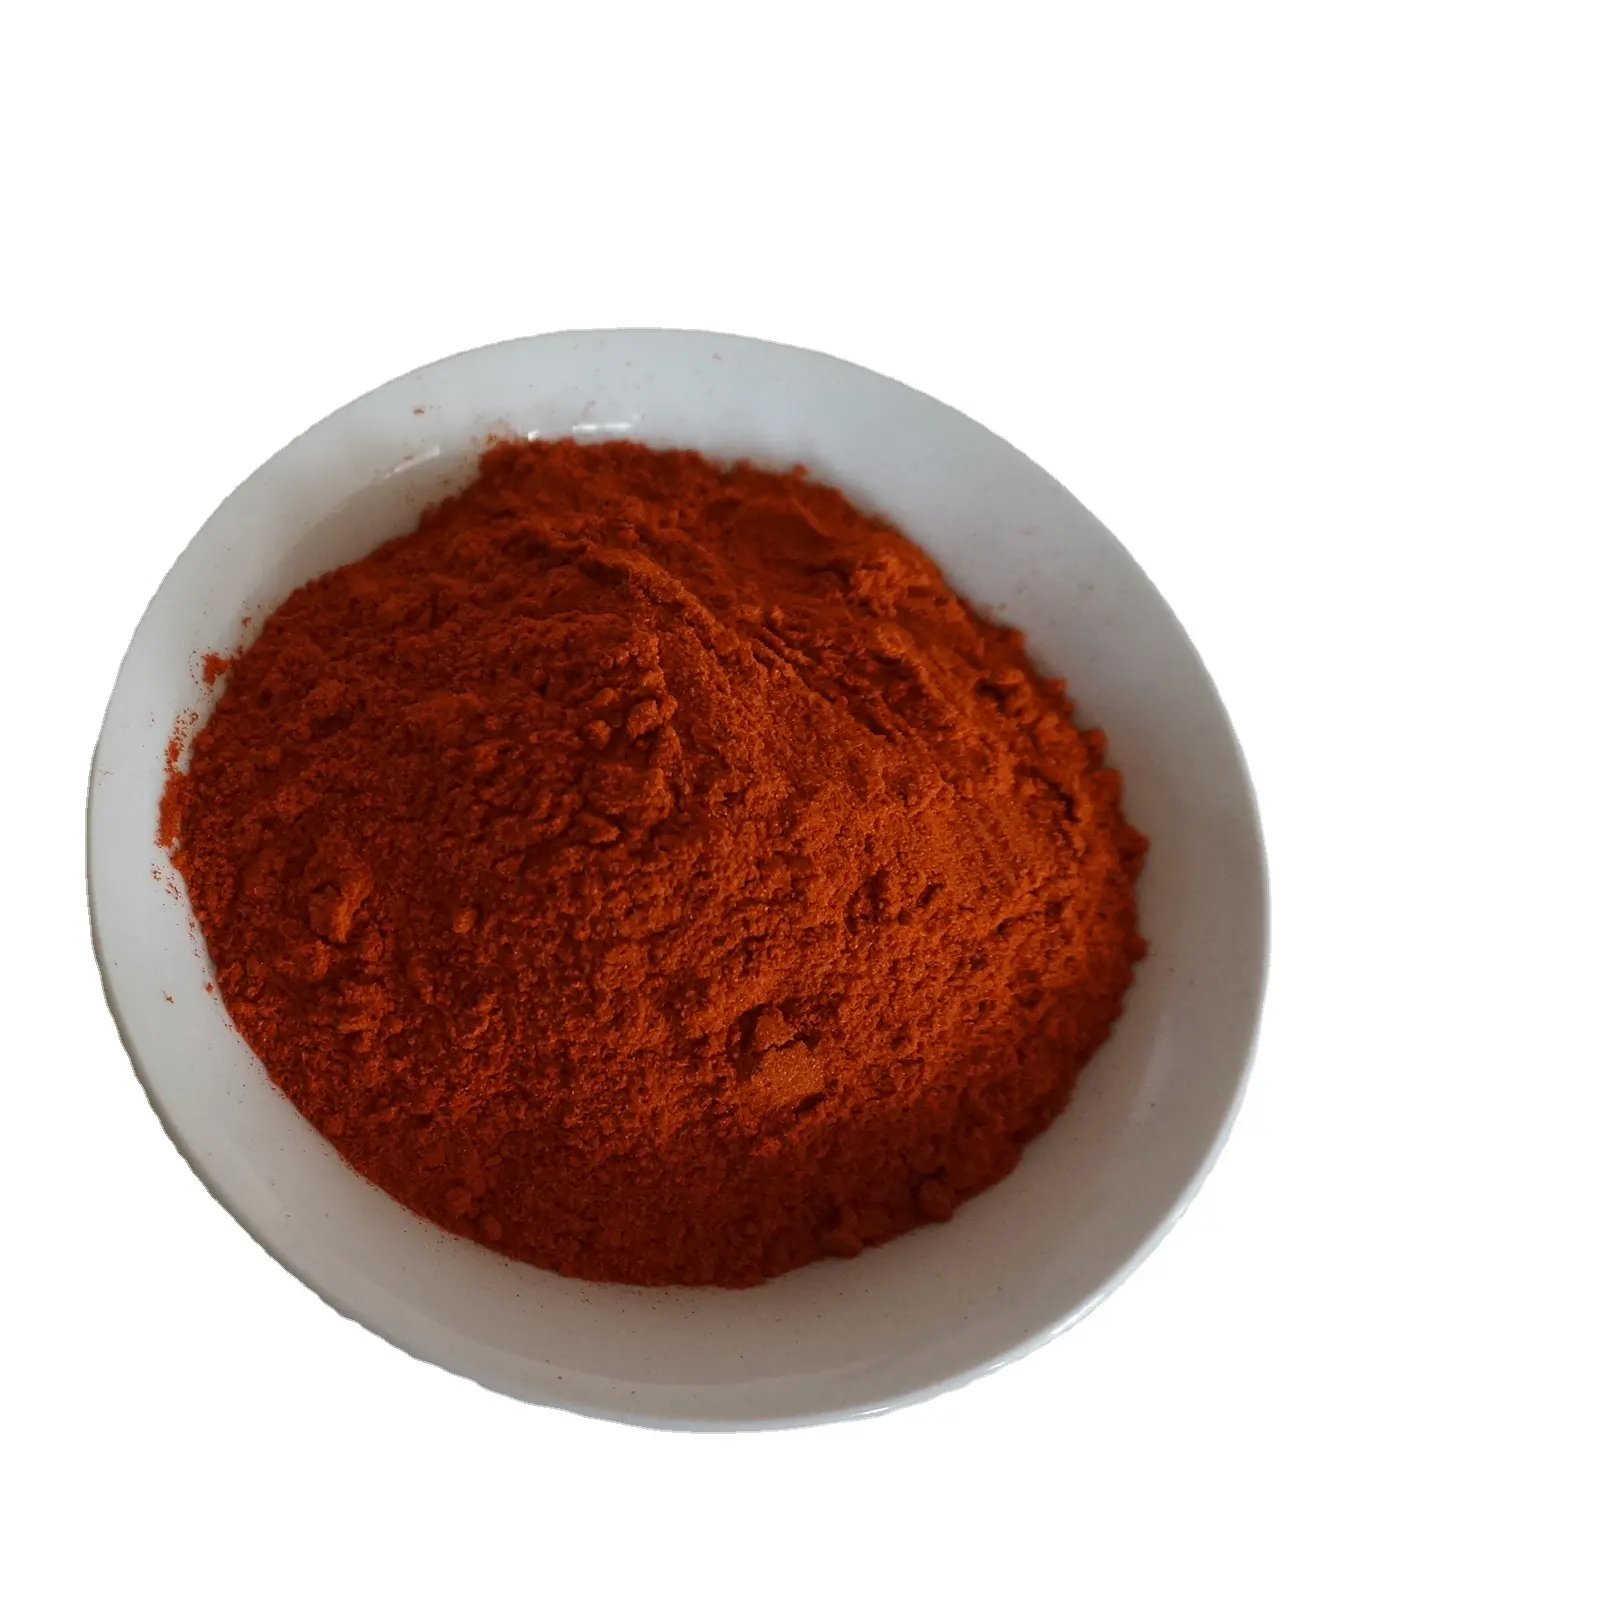 L'usine vend la poudre de chili la plus chaude directement, fabrication de poudre de chili chinois AD prix rouge graine de carvi halal brut Huayuan